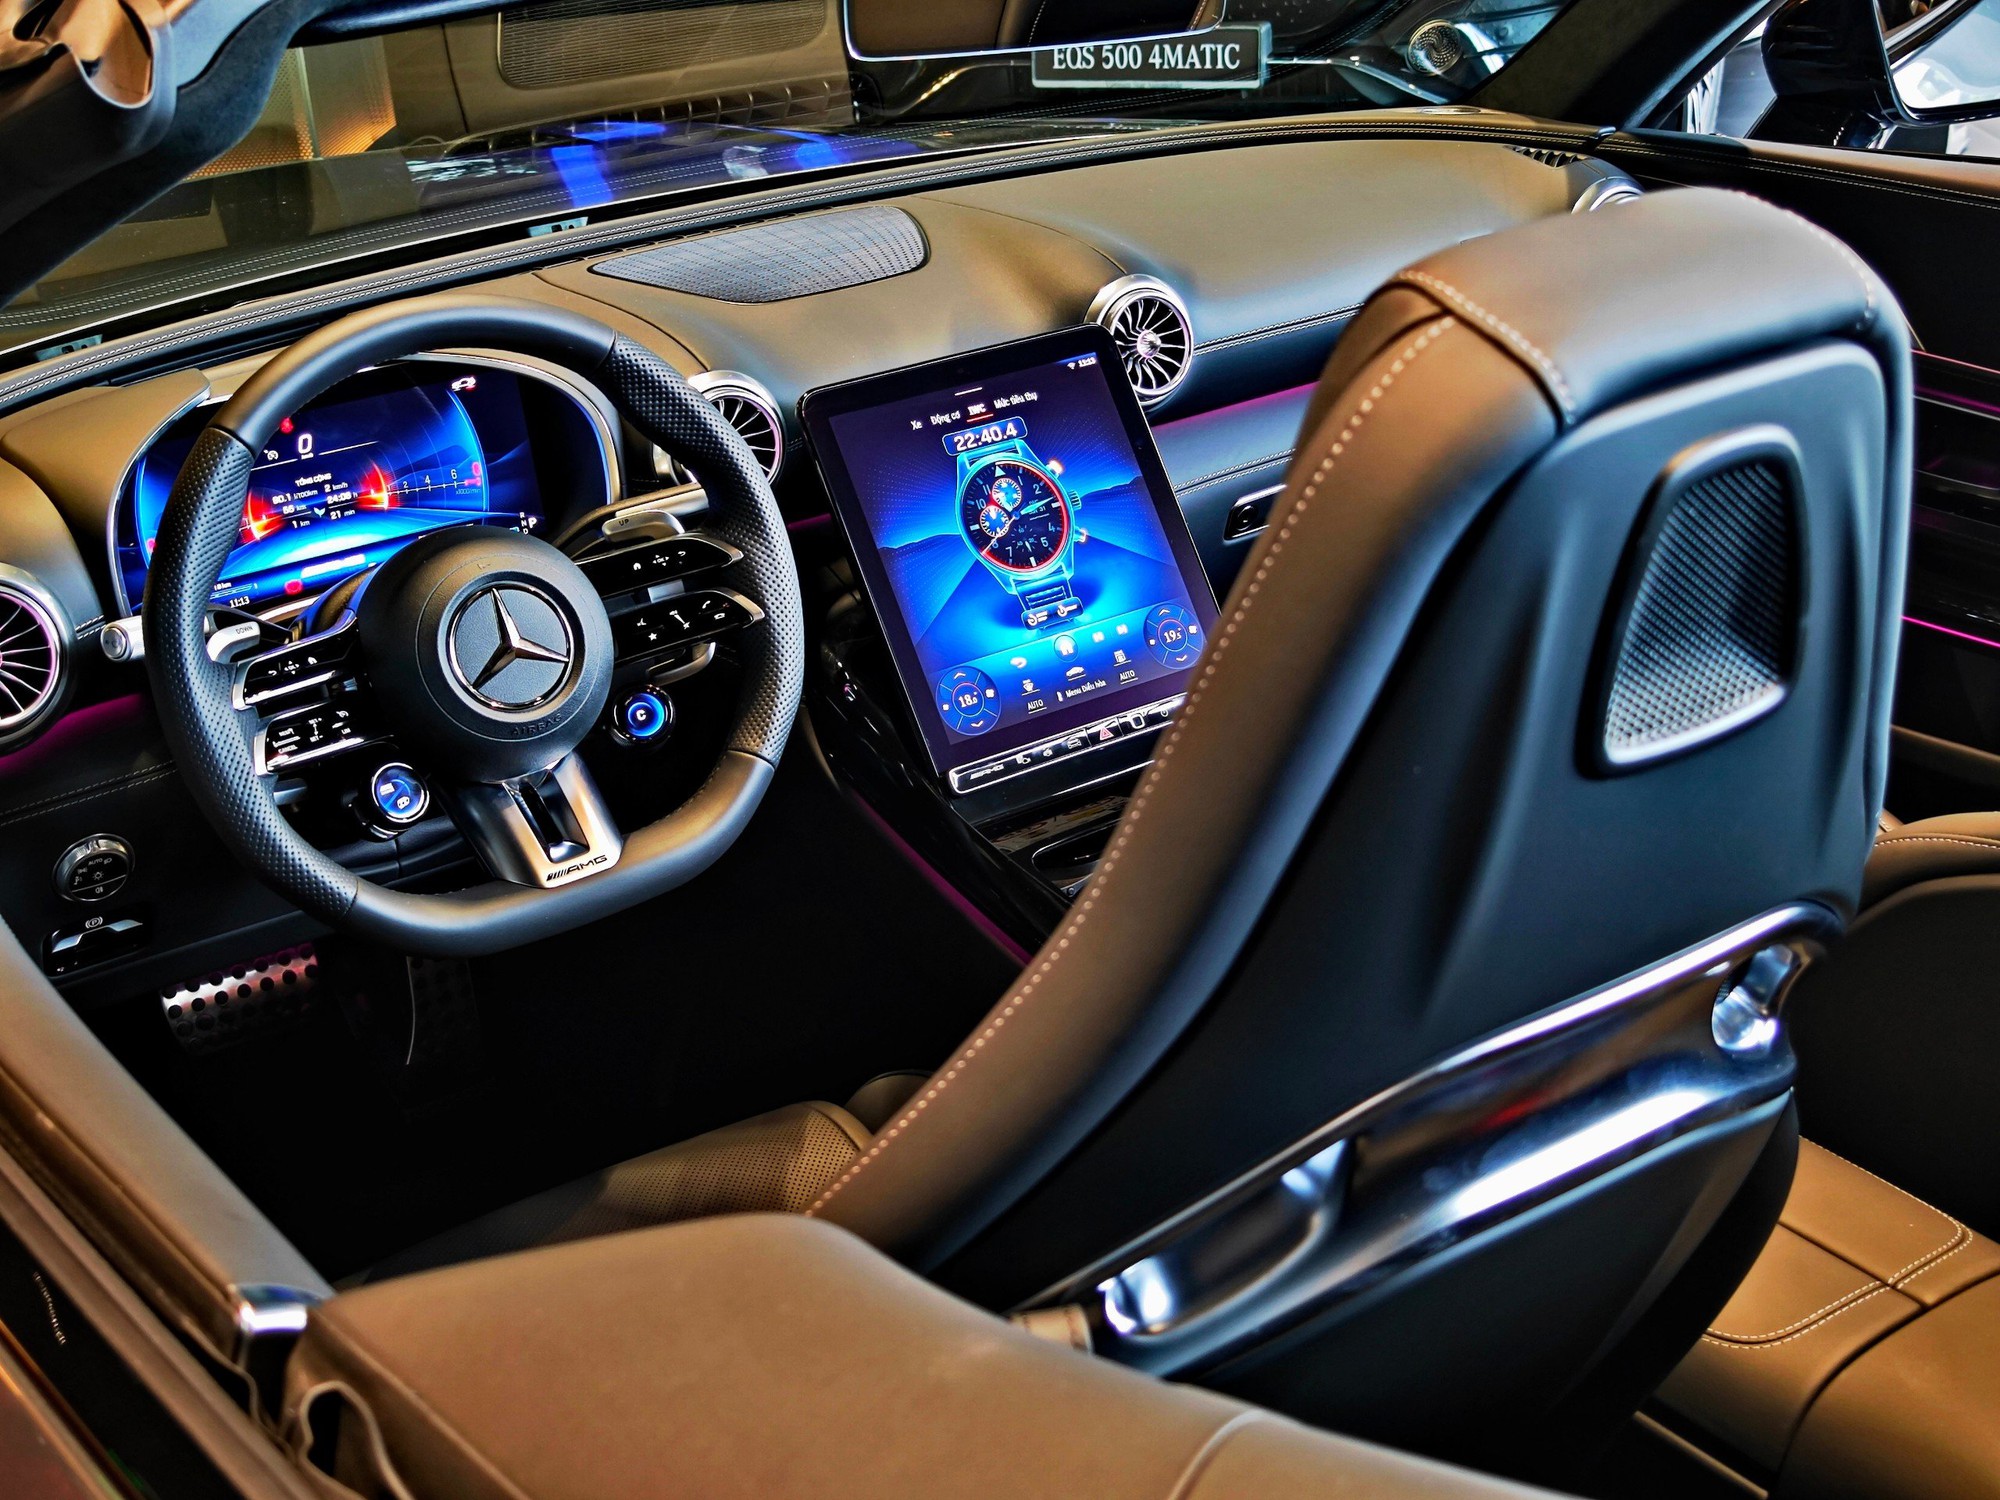 Chi tiết Mercedes-AMG SL 43 giá gần 7 tỷ đồng tại đại lý: Gói ngoại thất thể thao, nhiều công nghệ hiện đại đấu Porsche 911- Ảnh 7.